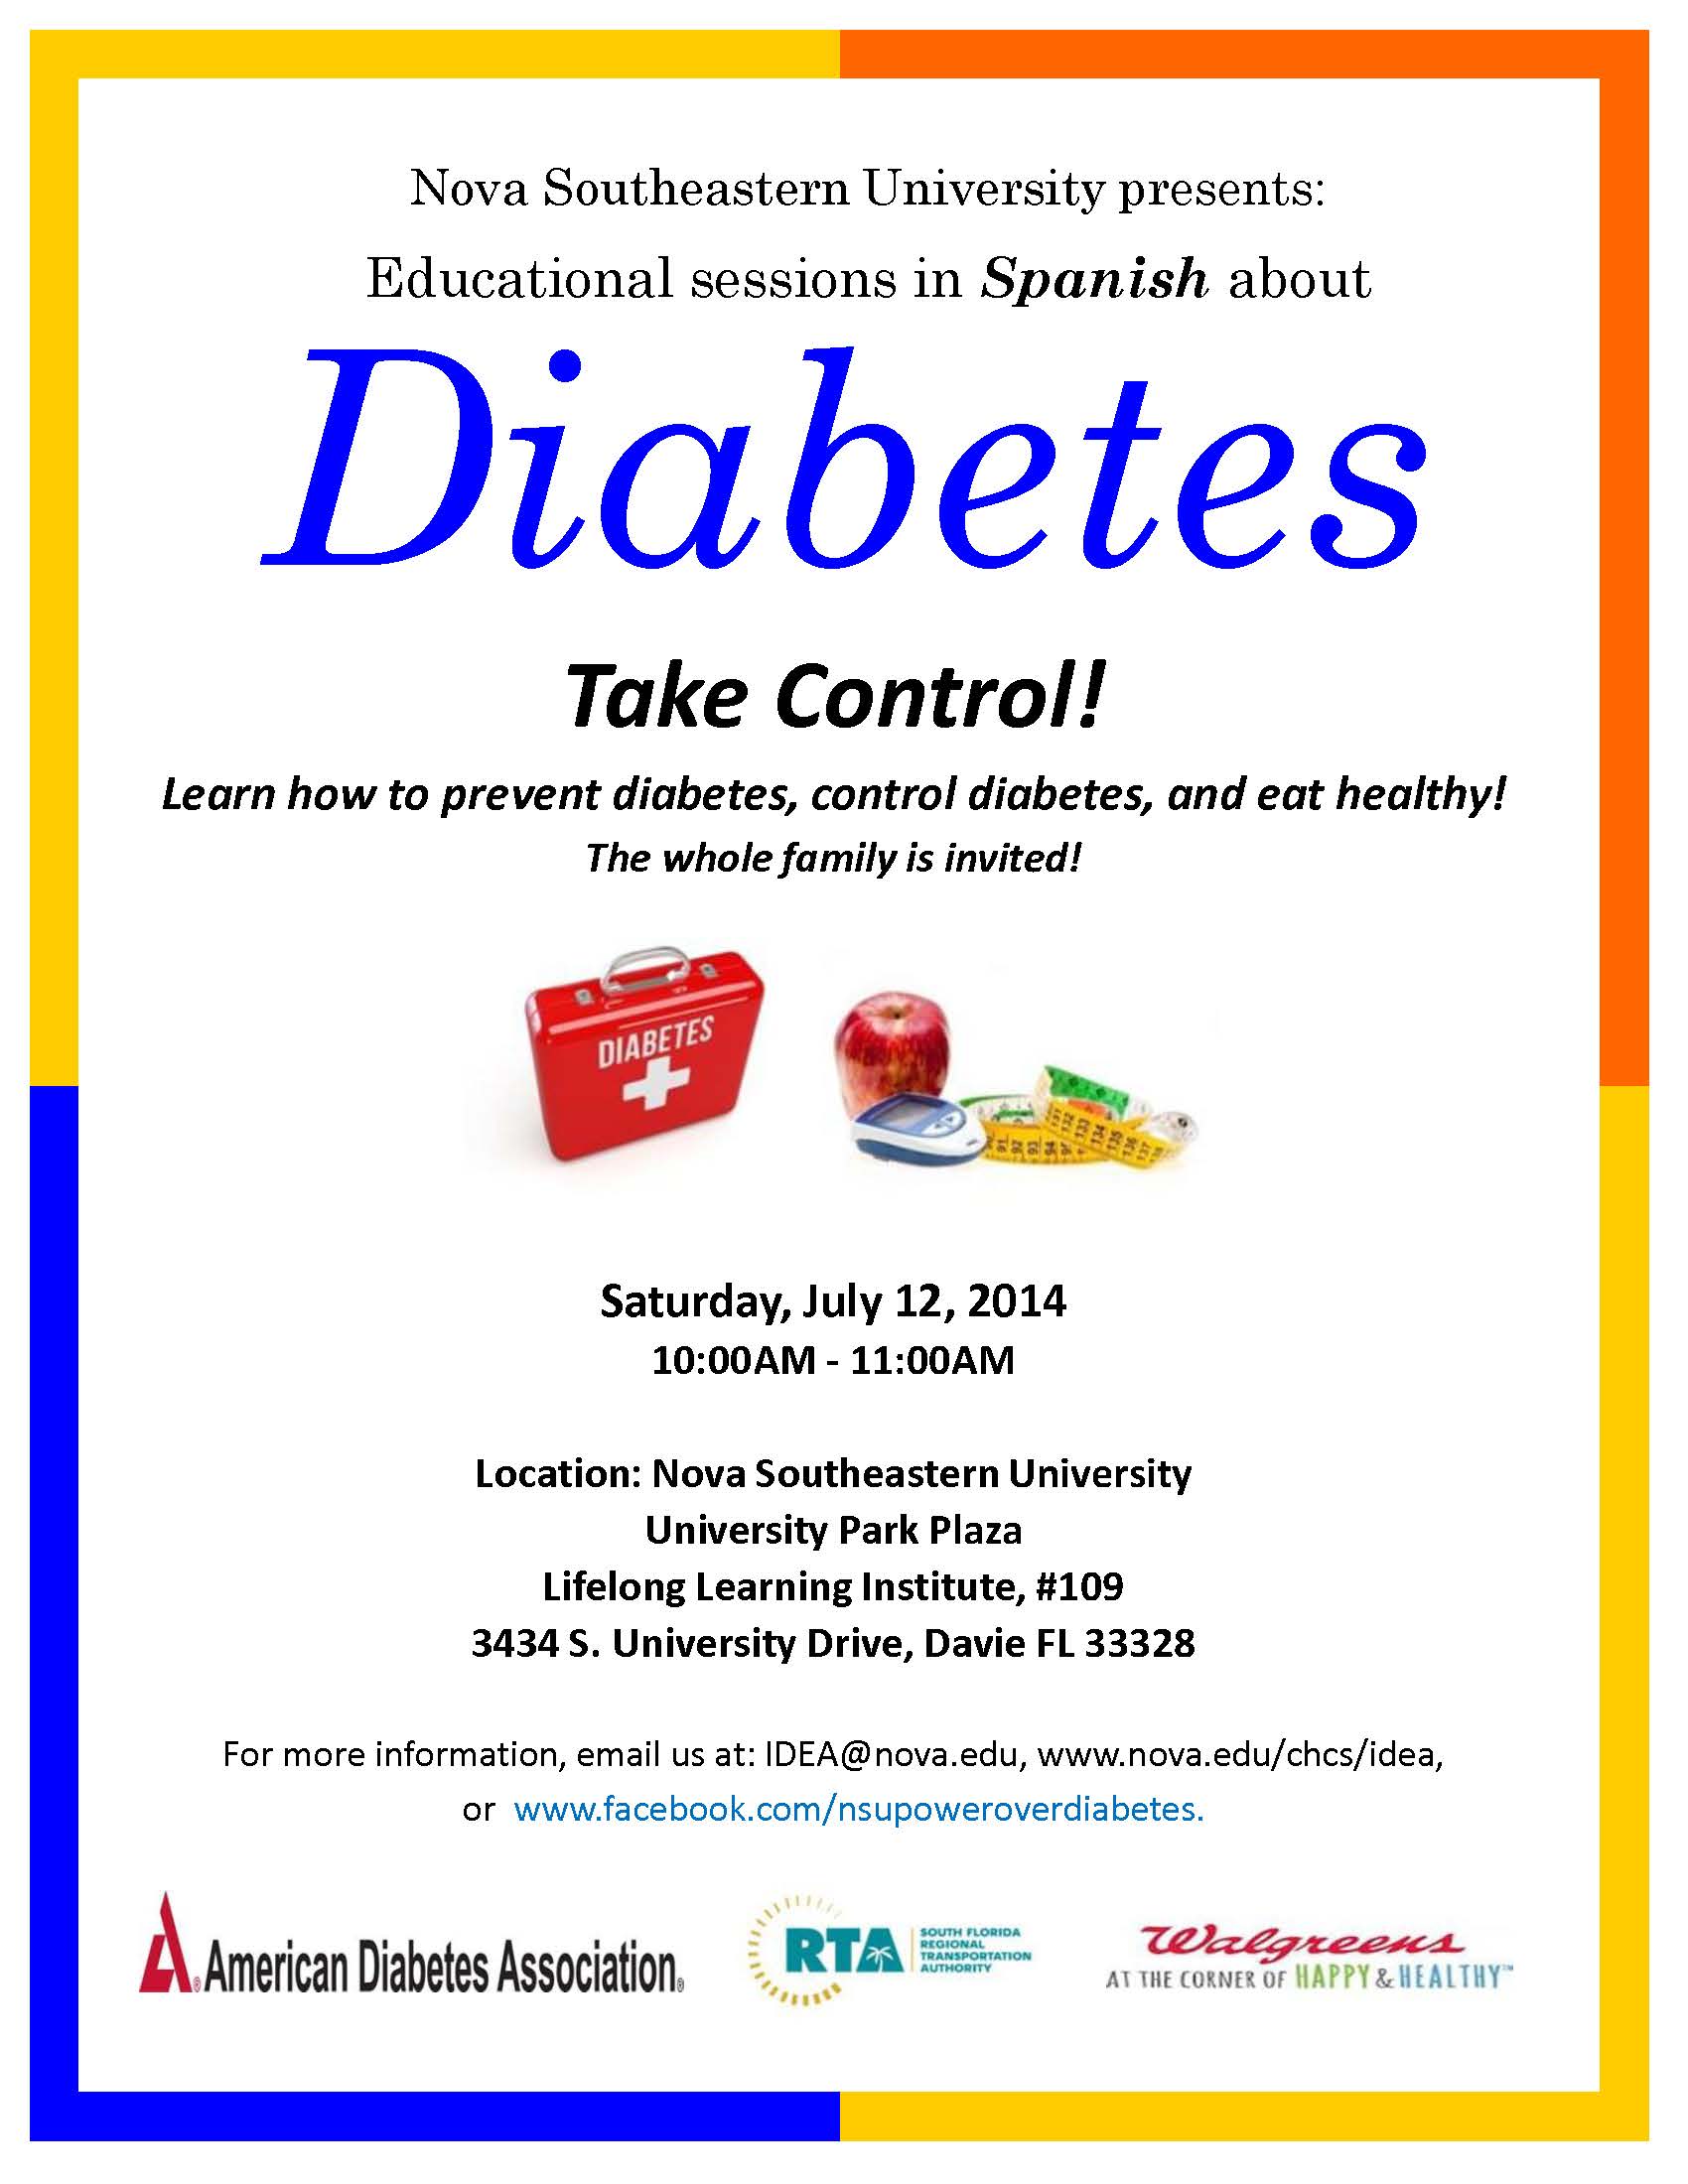 Diabetes Education Flyer